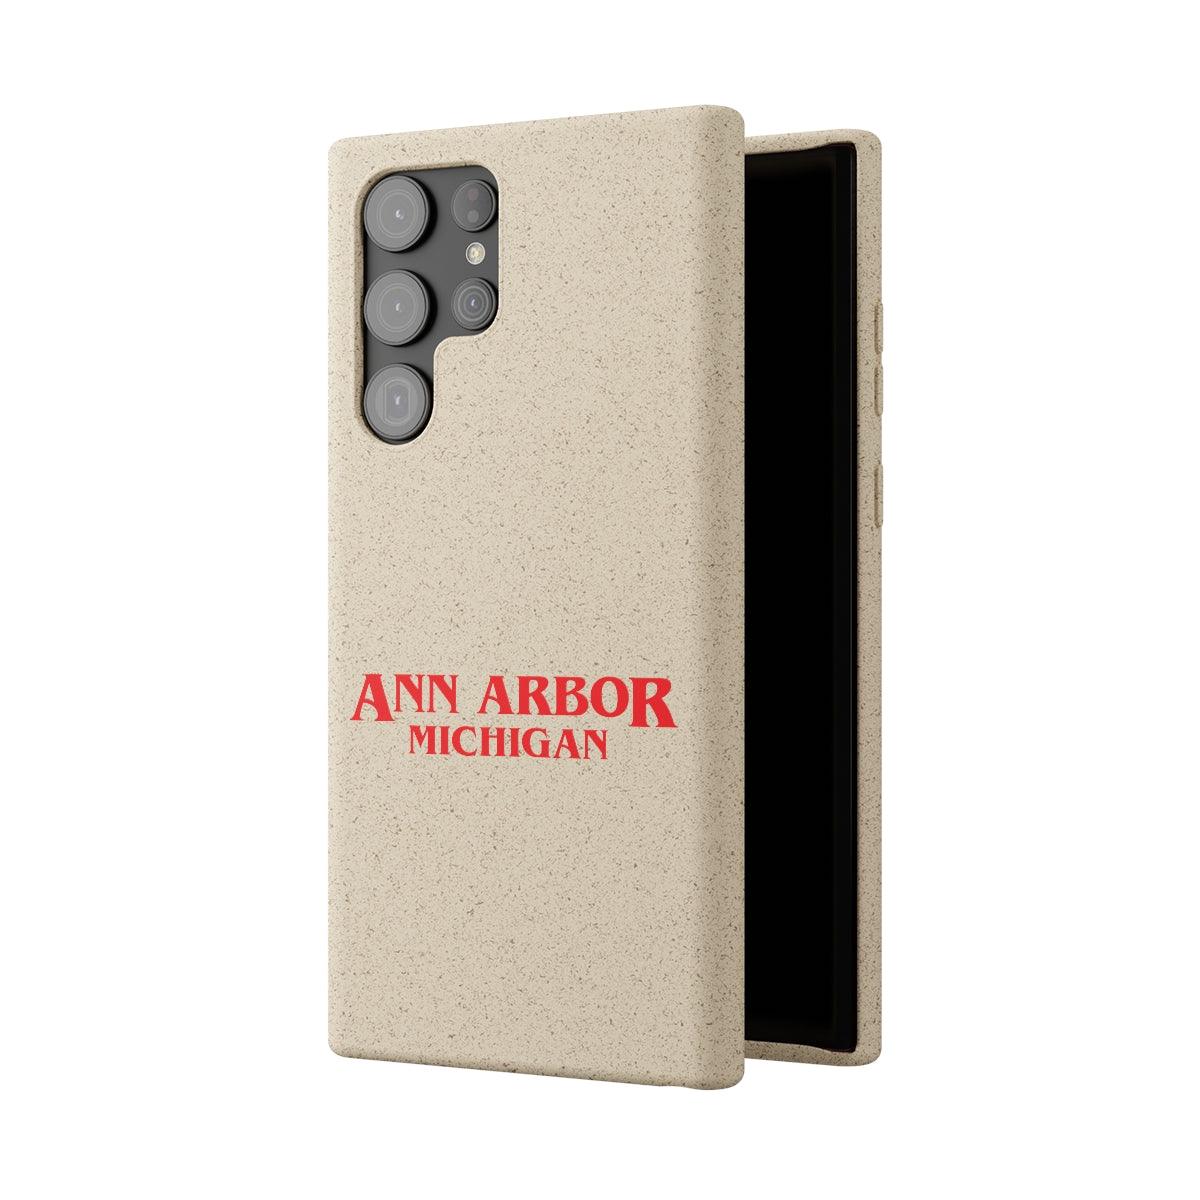 'Ann Arbor Michigan' Phone Cases (1980s Drama Parody) | Android & iPhone - Circumspice Michigan